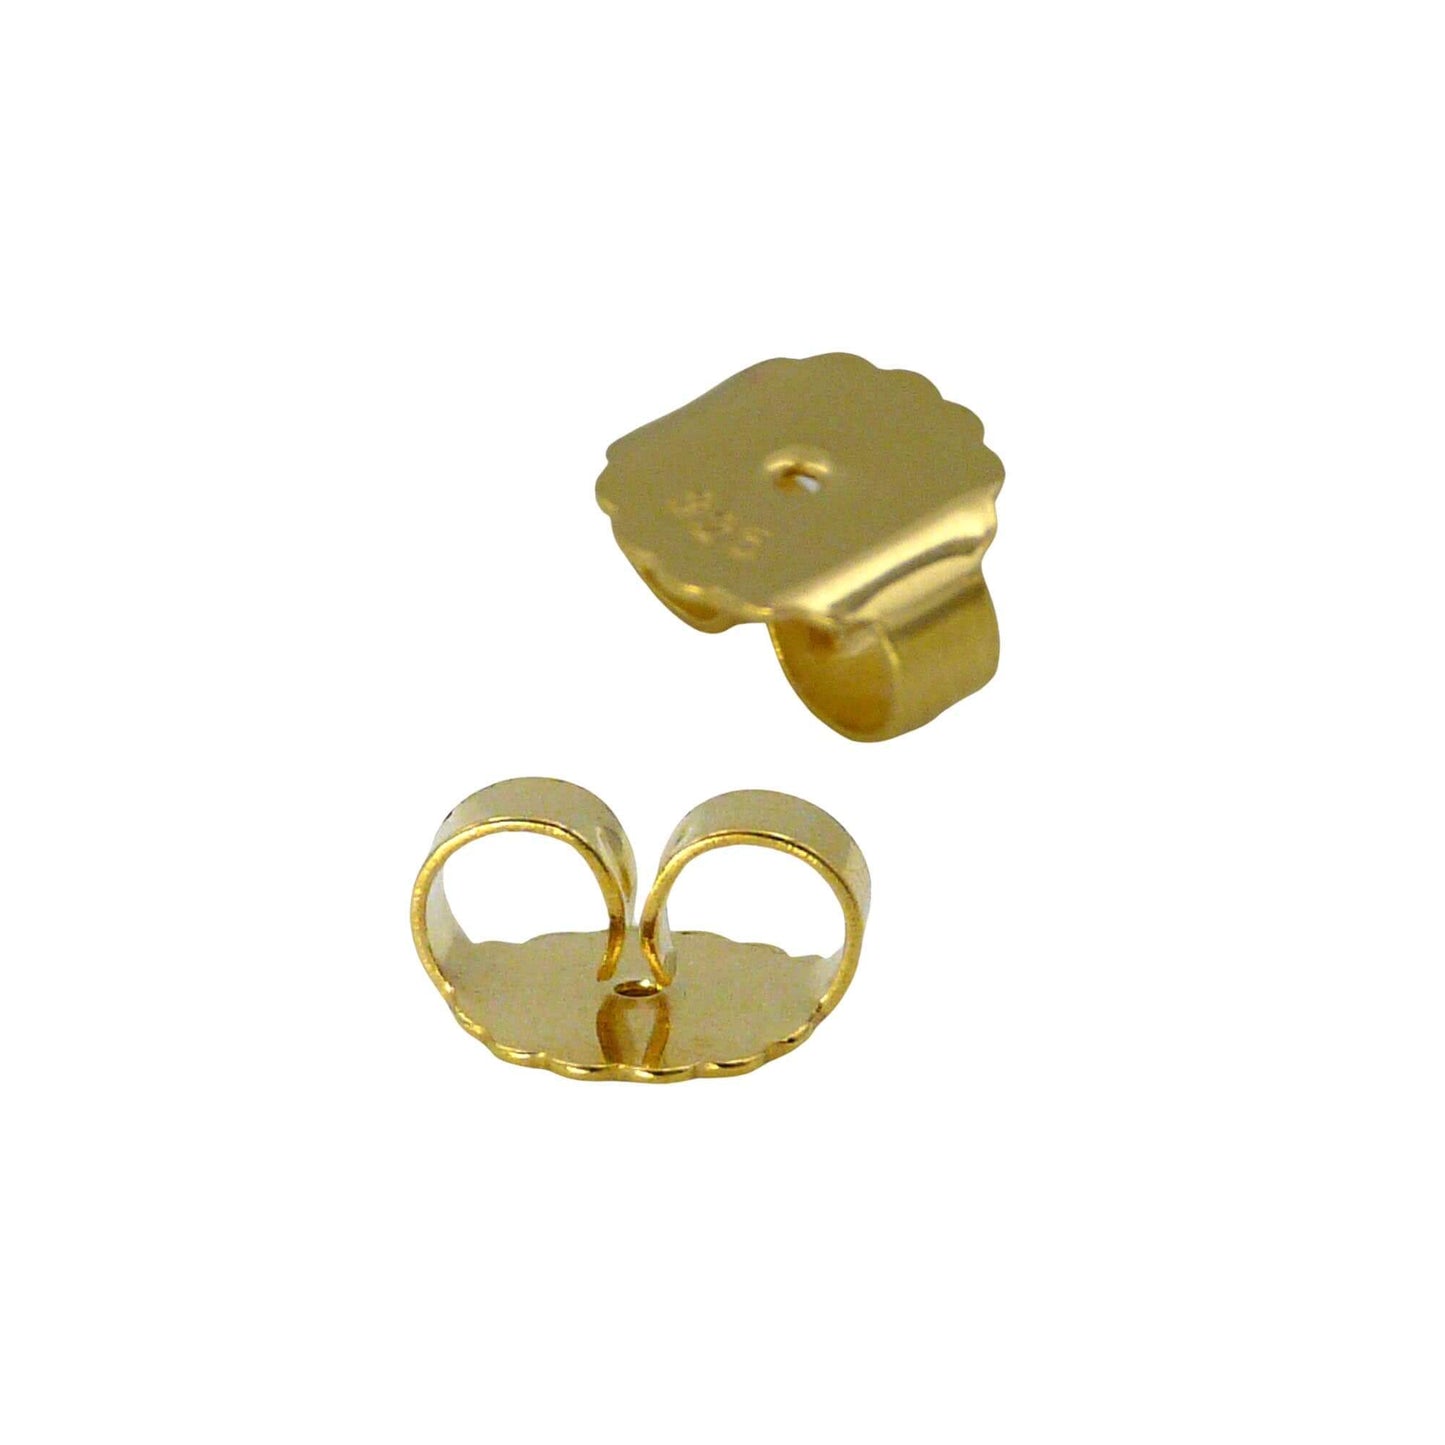 XXL Ohrmutter 10mm vergoldet Silber 925/- für schwere Ohrstecker oder größere Ohrlöcher